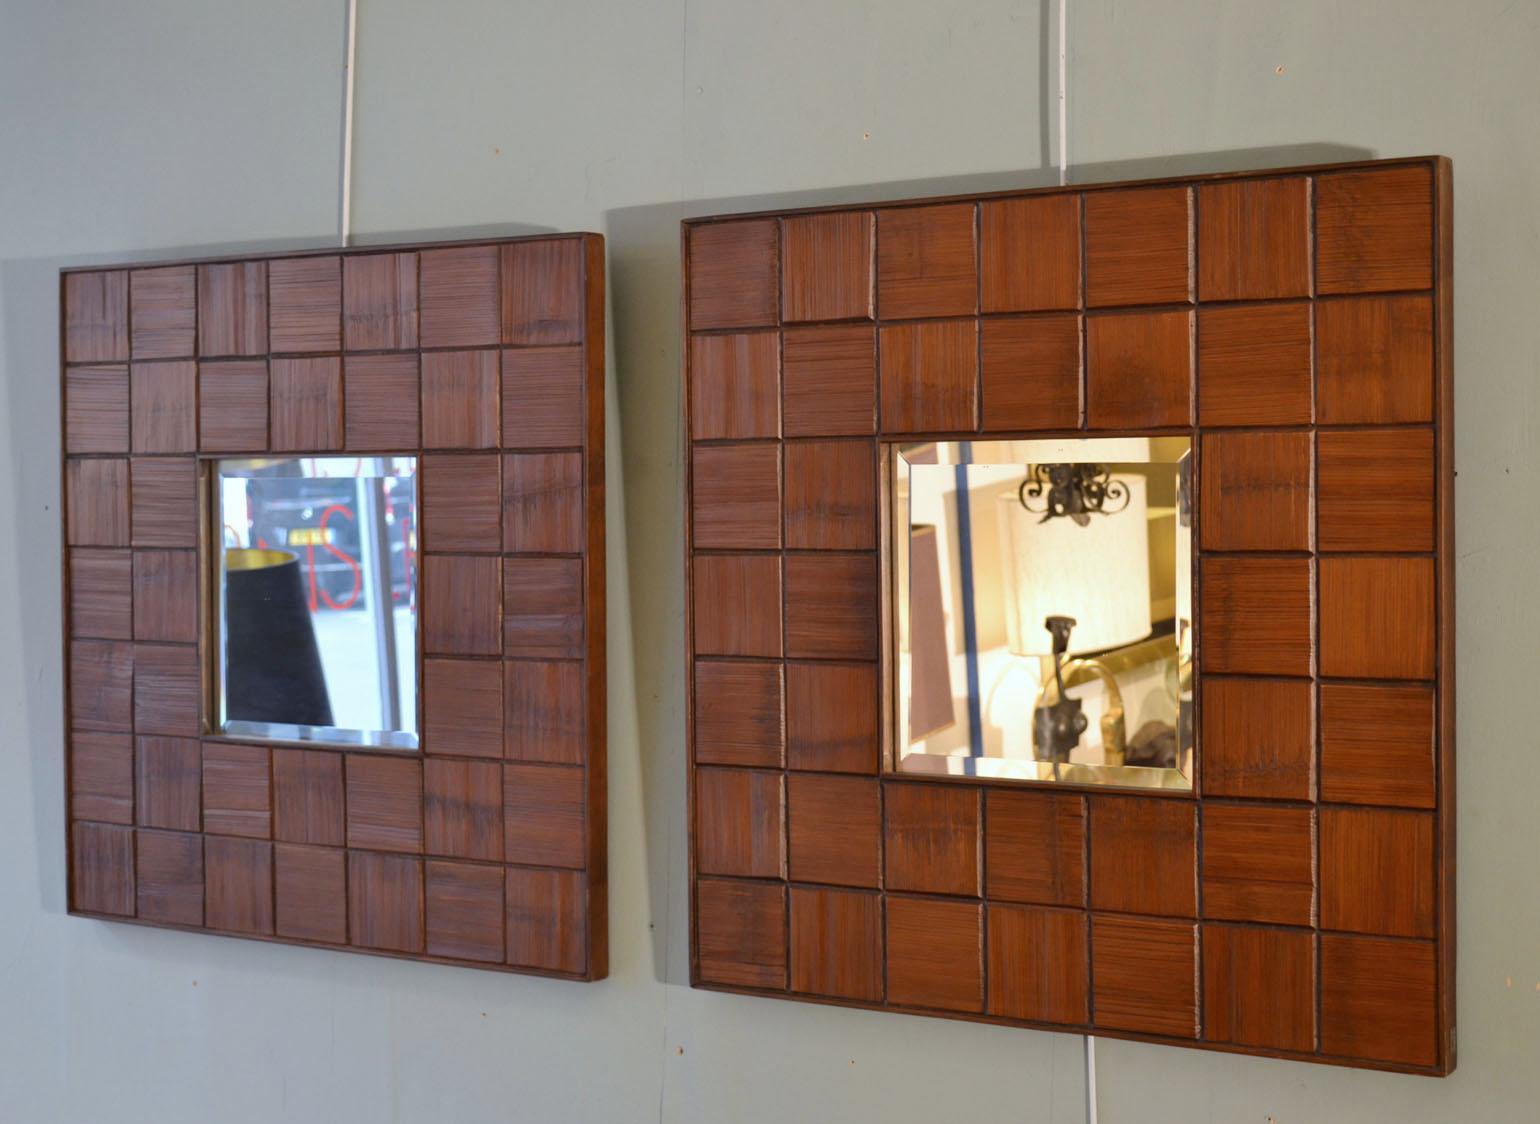 Paire de miroirs carrés avec une bordure décorative composée de blocs carrés de sections horizontales et verticales texturées brutalistes sculptées en bois de noyer. Le miroir carré de qualité est biseauté (dimensions : 29x29 cm), fabriqué en Italie